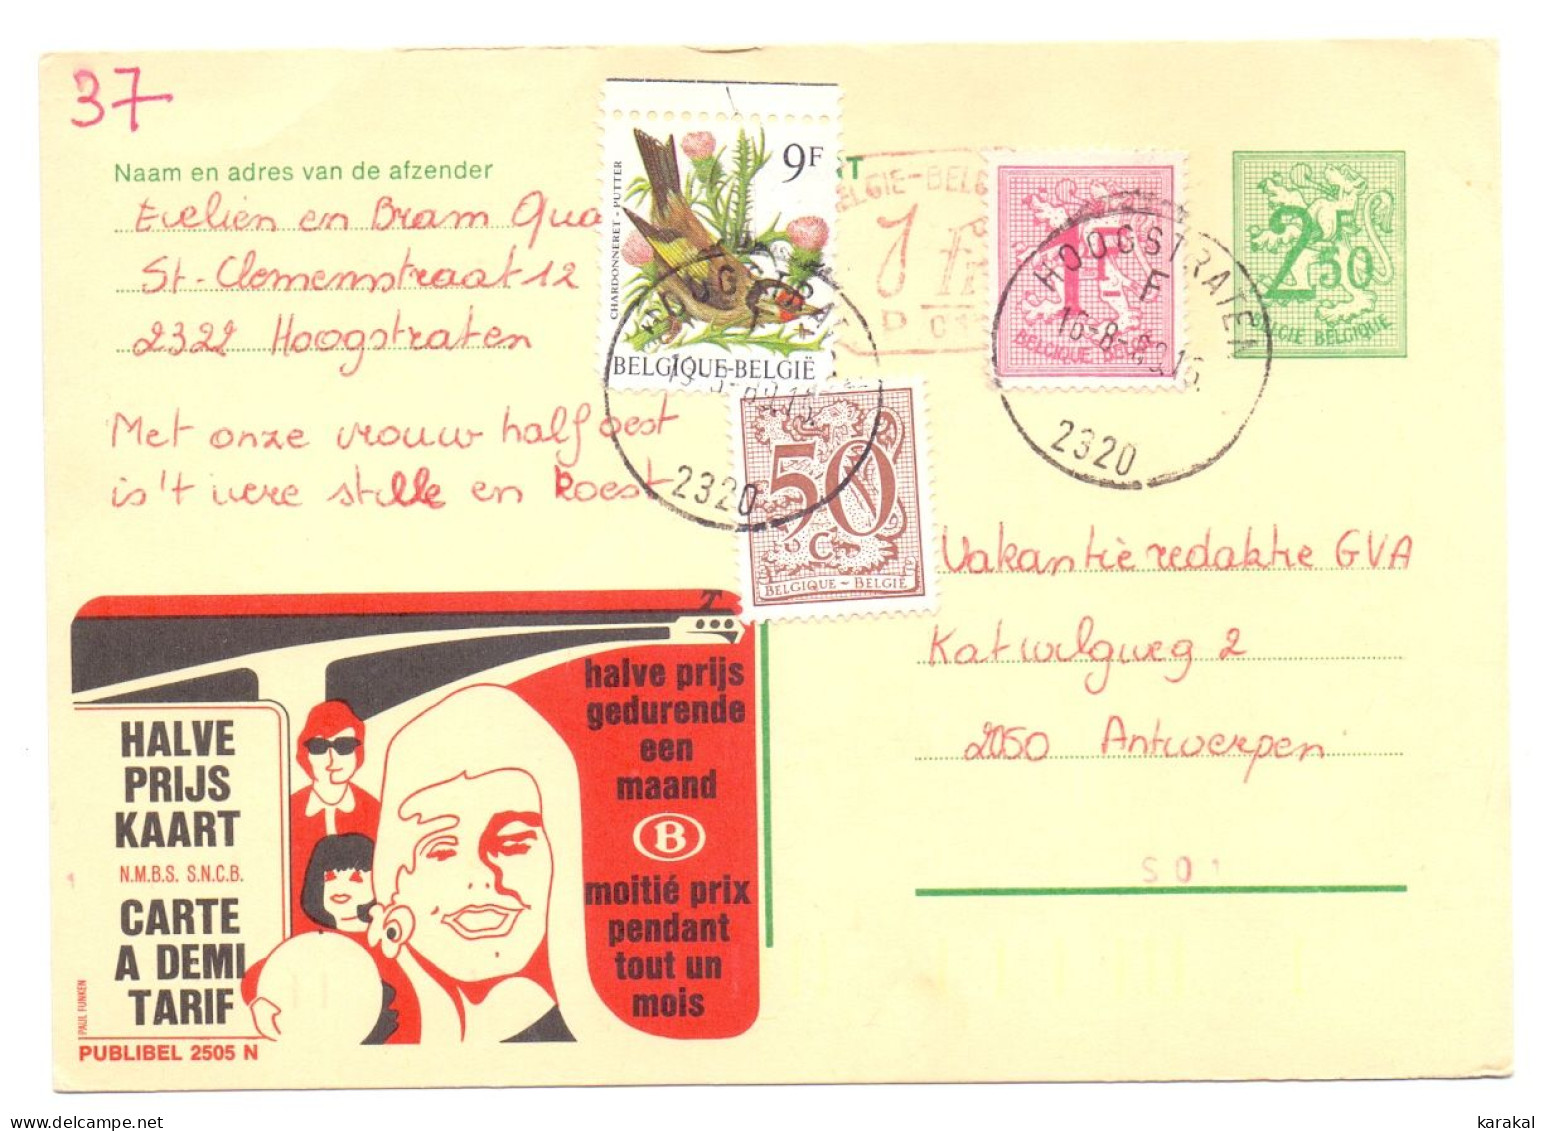 Belgique Entier Postal Stationery Publibel 2505 N P010 SNCB NMBS Halve Prijs Kaart Hoogstraten 1989 - Adressenänderungen